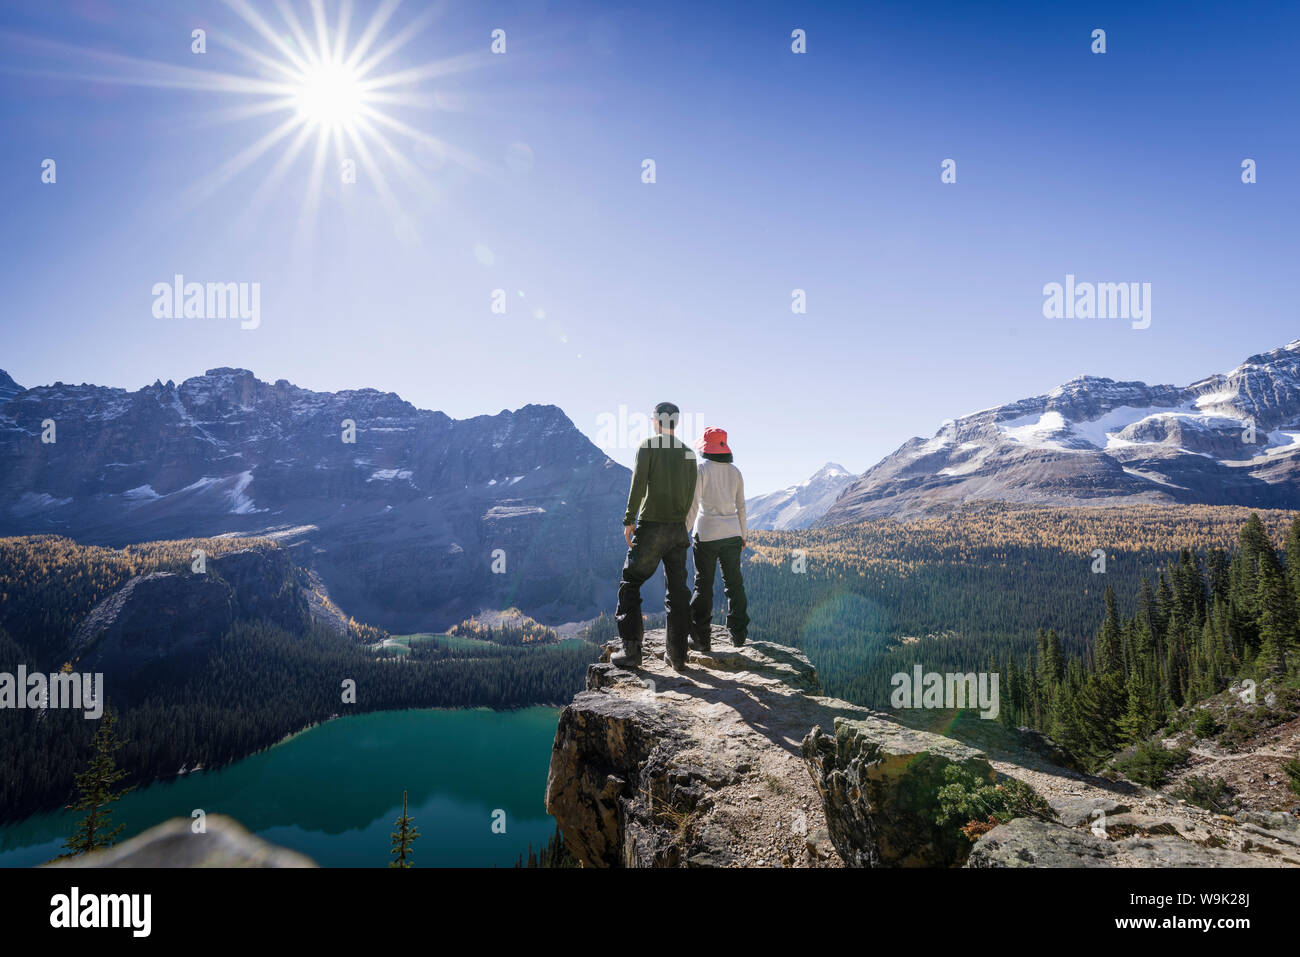 Les randonneurs à la recherche au niveau de la vue des montagnes des Alpes et du lac O'Hara, depuis le sentier du circuit alpin, le parc national Yoho, l'UNESCO, le Canada Banque D'Images